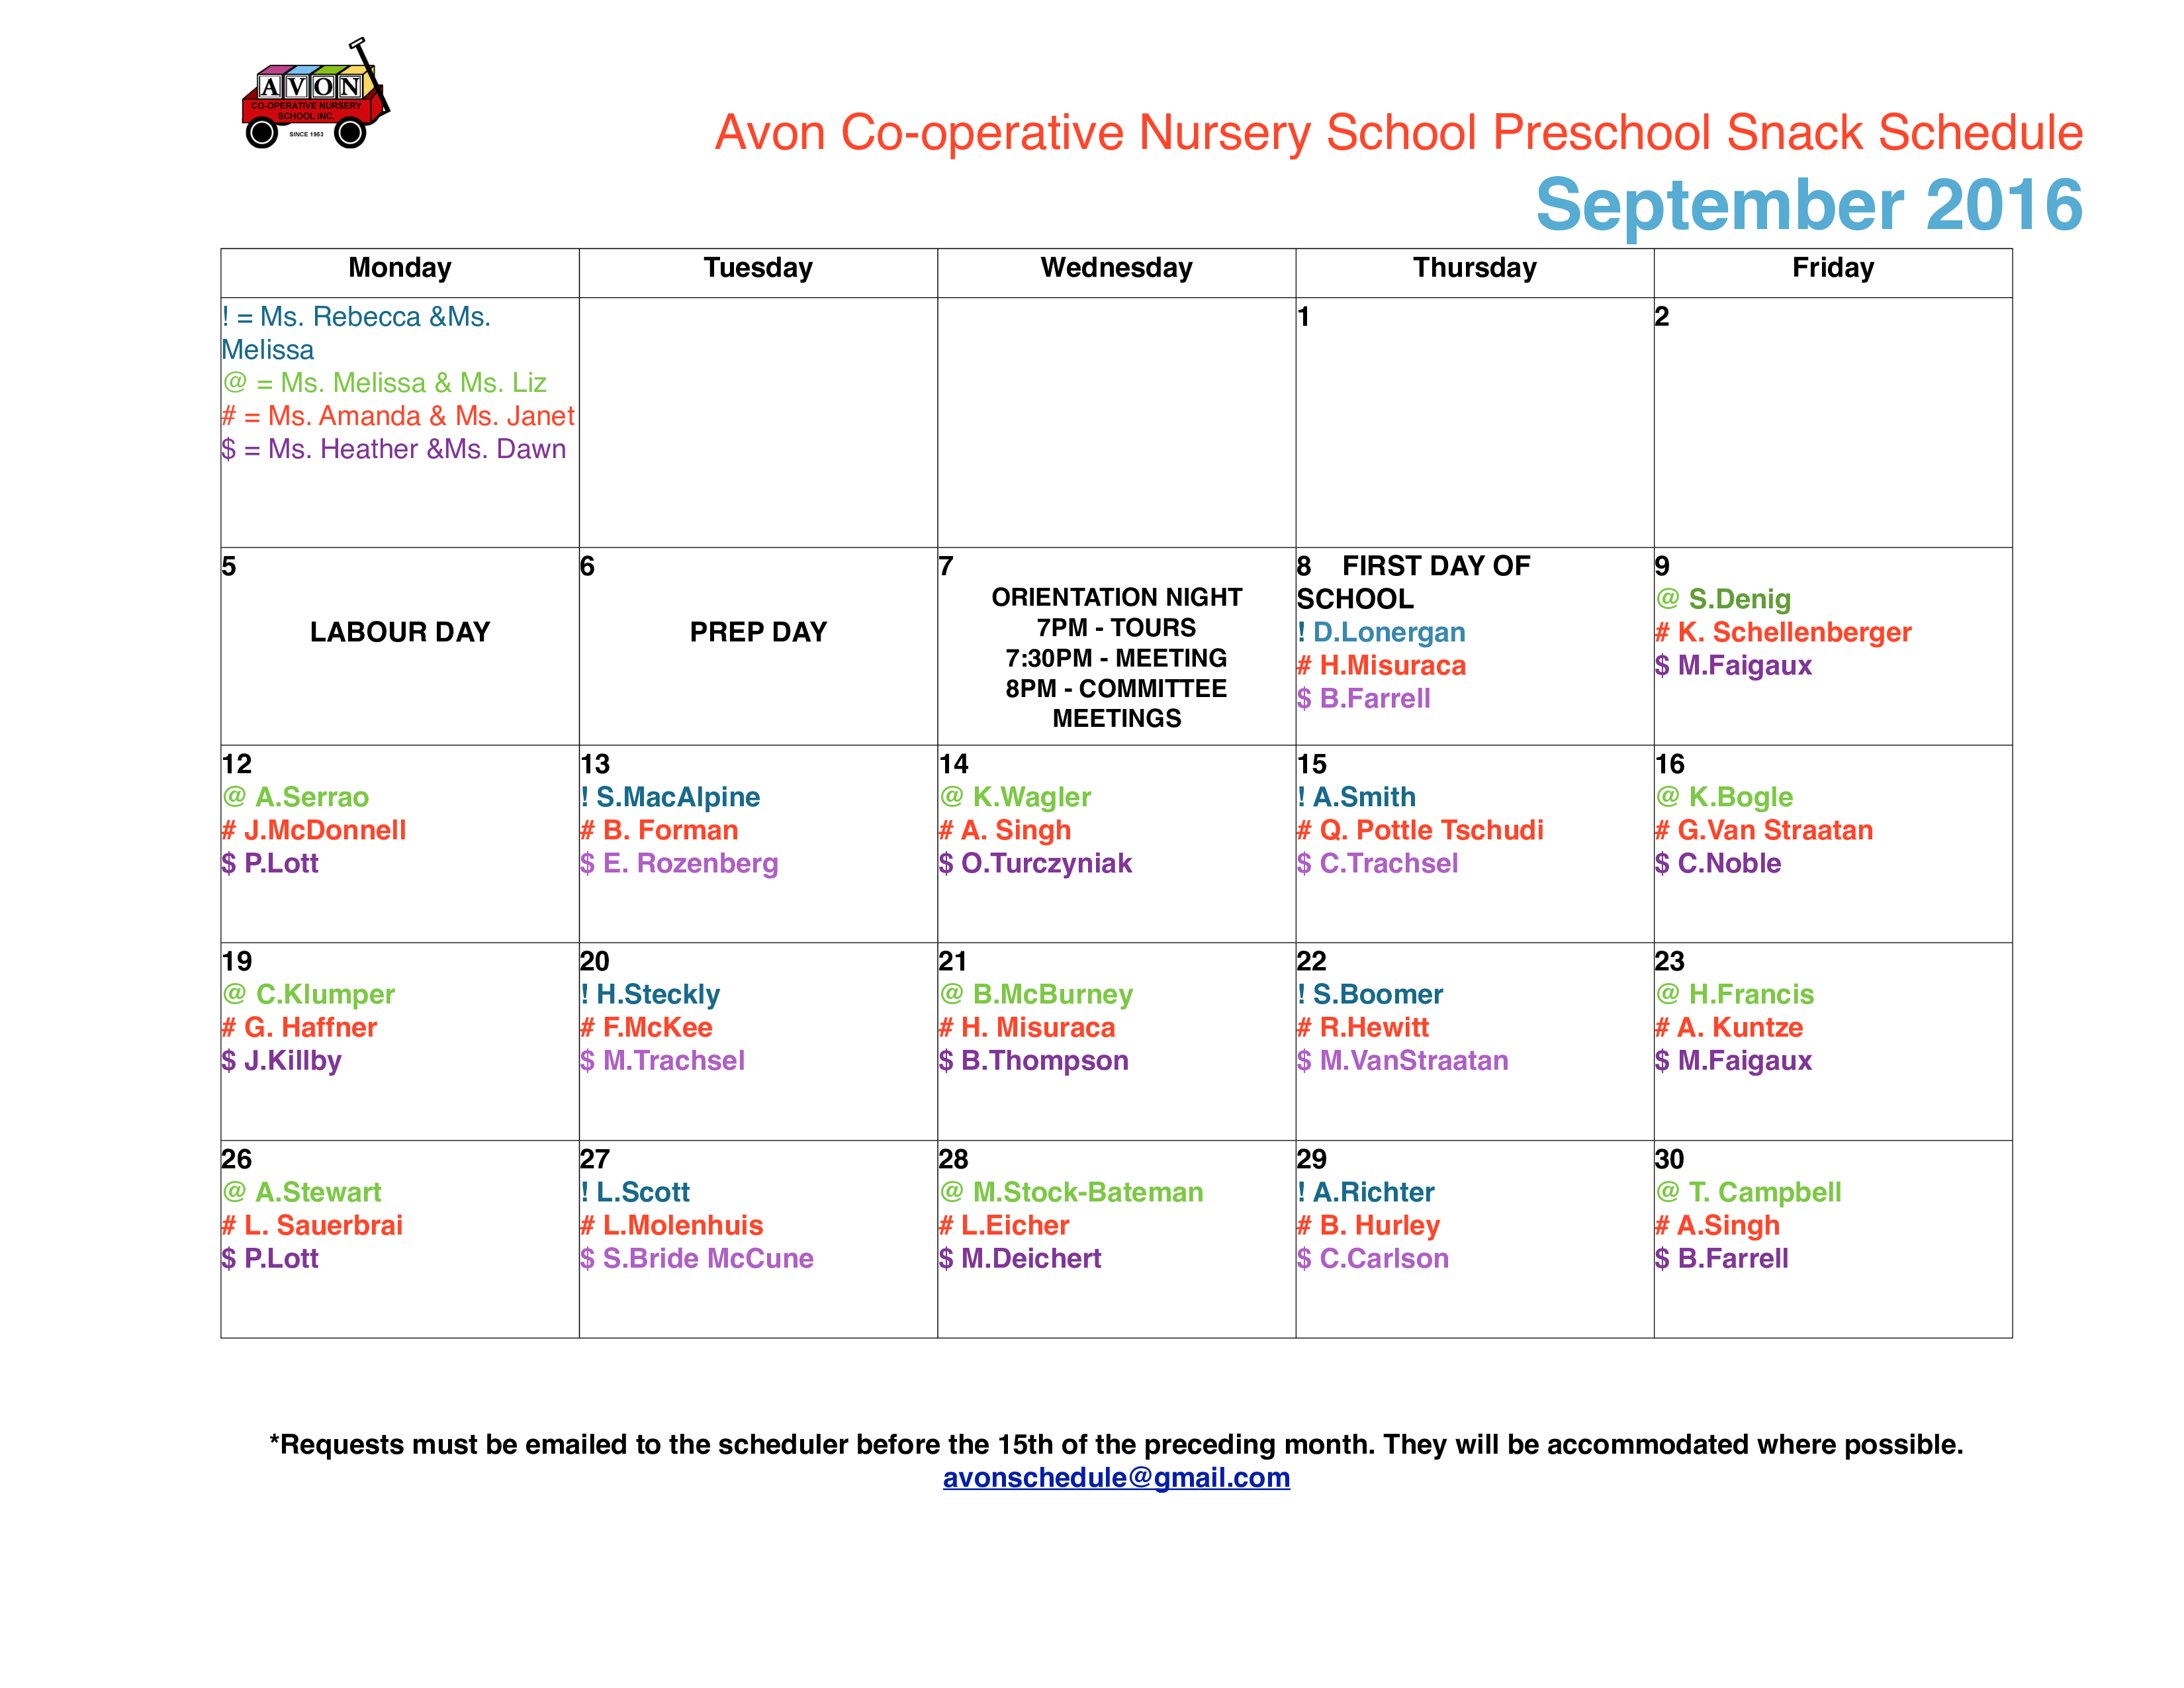 Preschool Snack Schedule main image